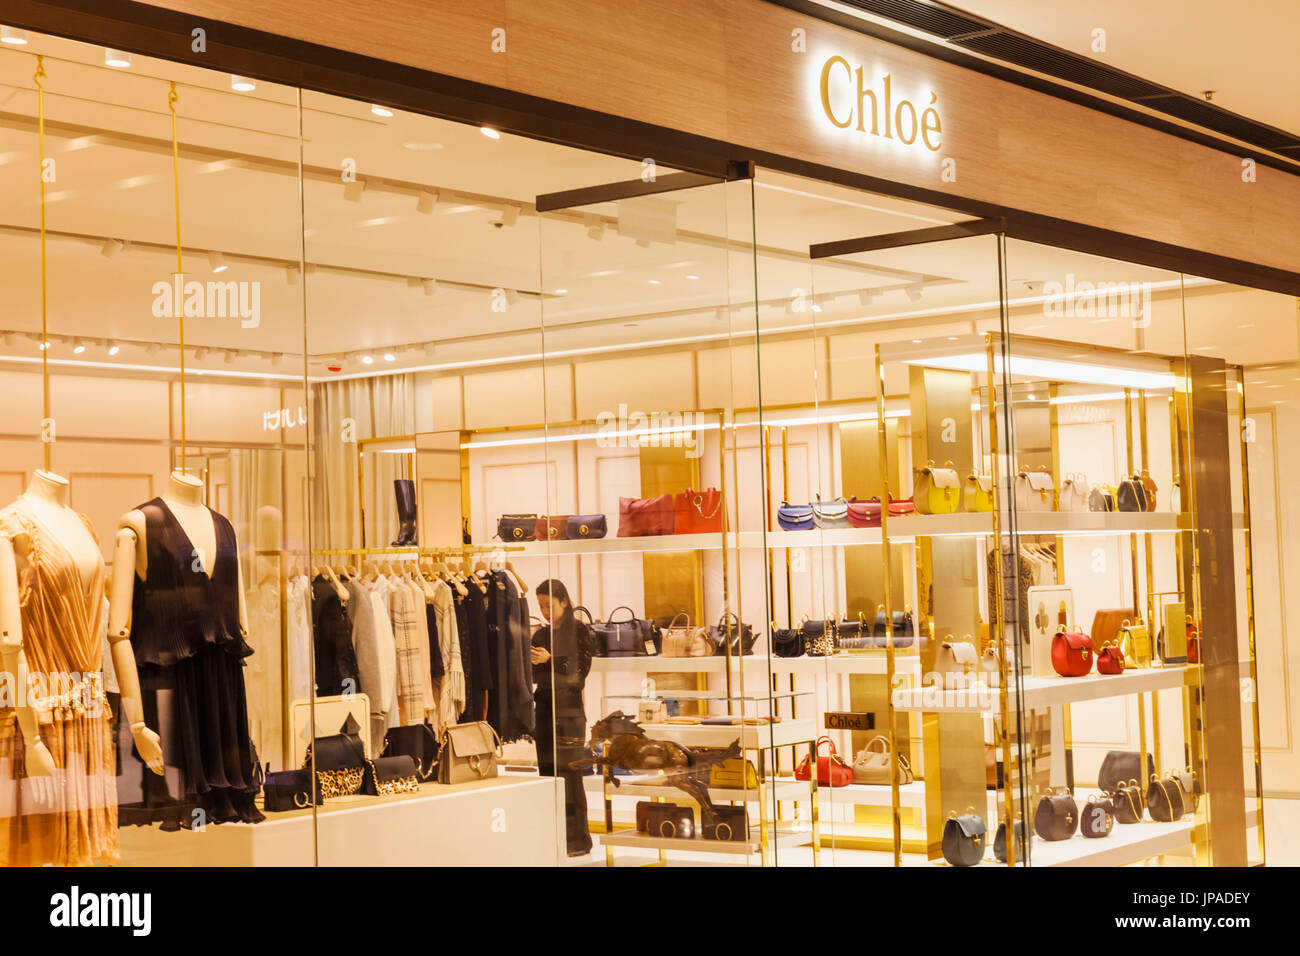 China, Hongkong, Central, IFC Shopping Mall, Chloe Store Stockfoto